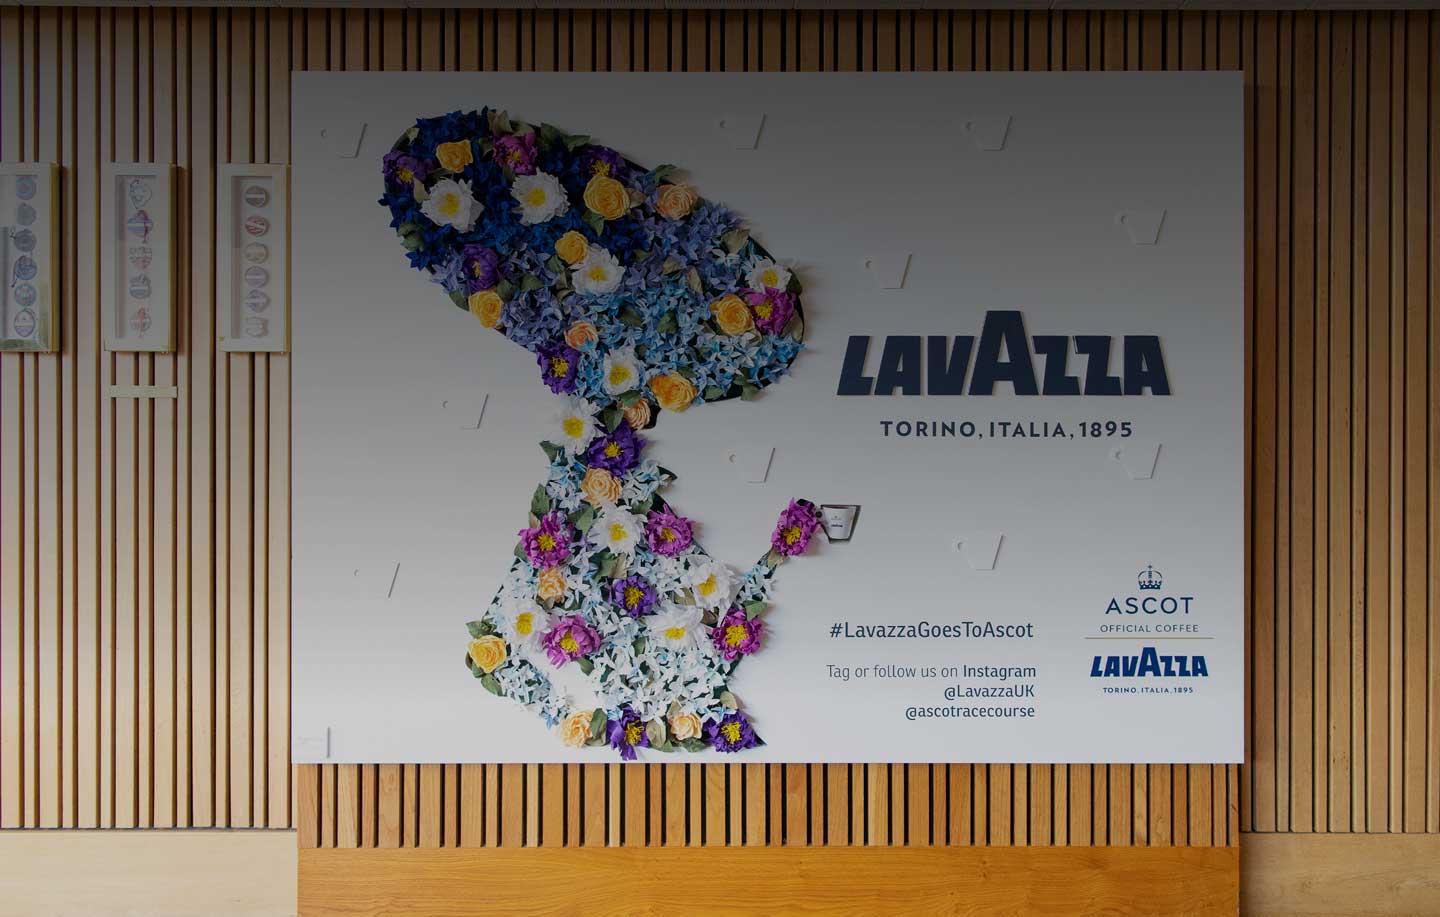 Royal Ascot y Lavazza: valores compartidos